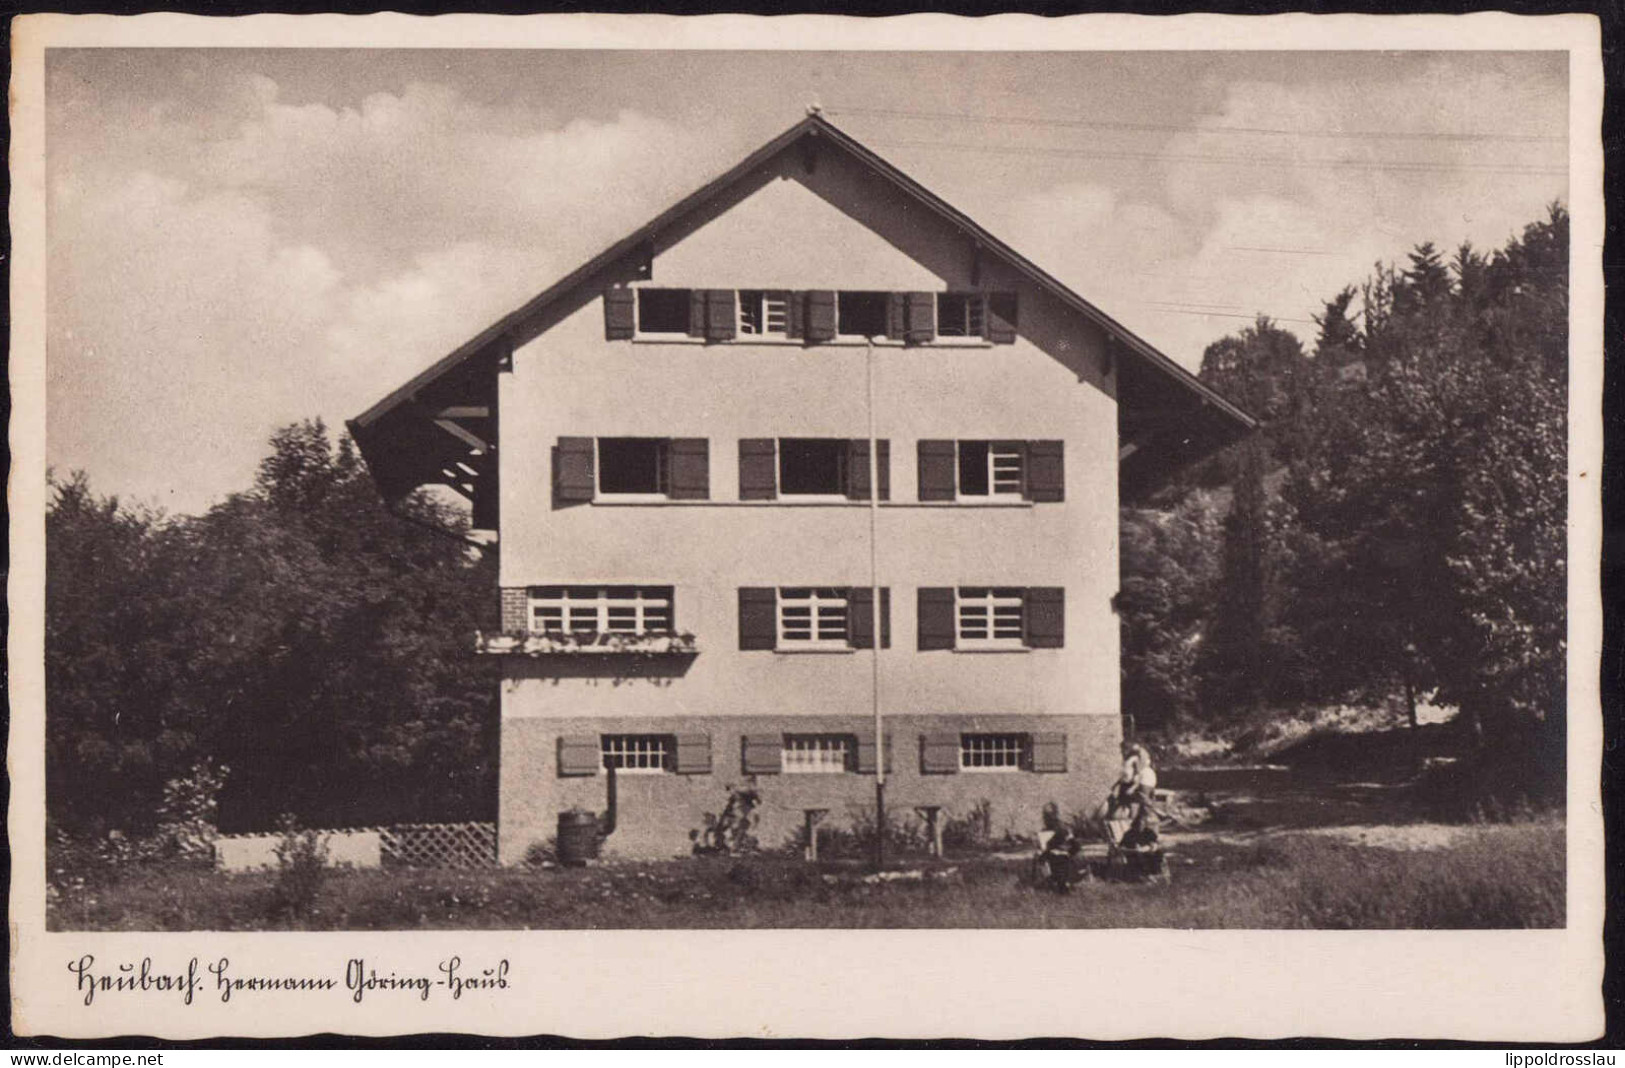 * W-7972 Heubach Hermann-Göring-Haus - Schwaebisch Gmünd